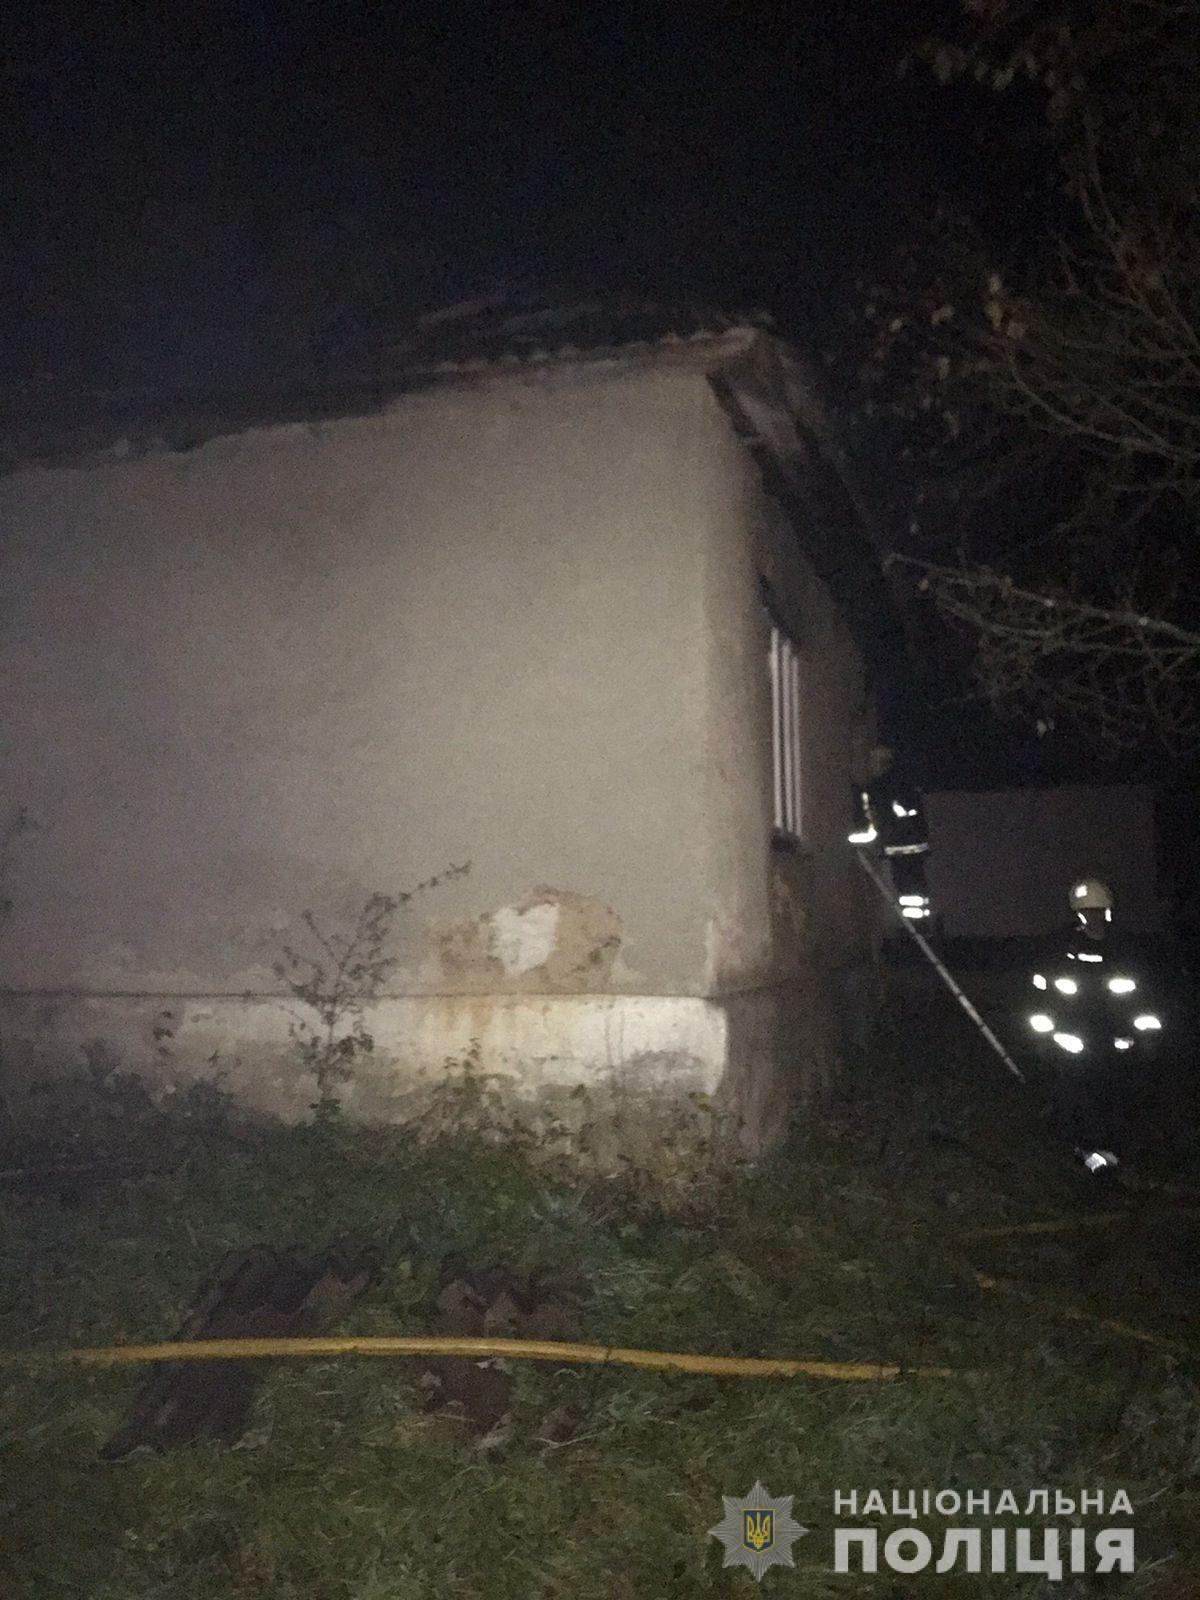 28 жовтня, близько 21:20 до поліції надійшло повідомлення від чергового ДСНС про пожежу у житловому будинку в селі Плоский Потік Мукачівського району.